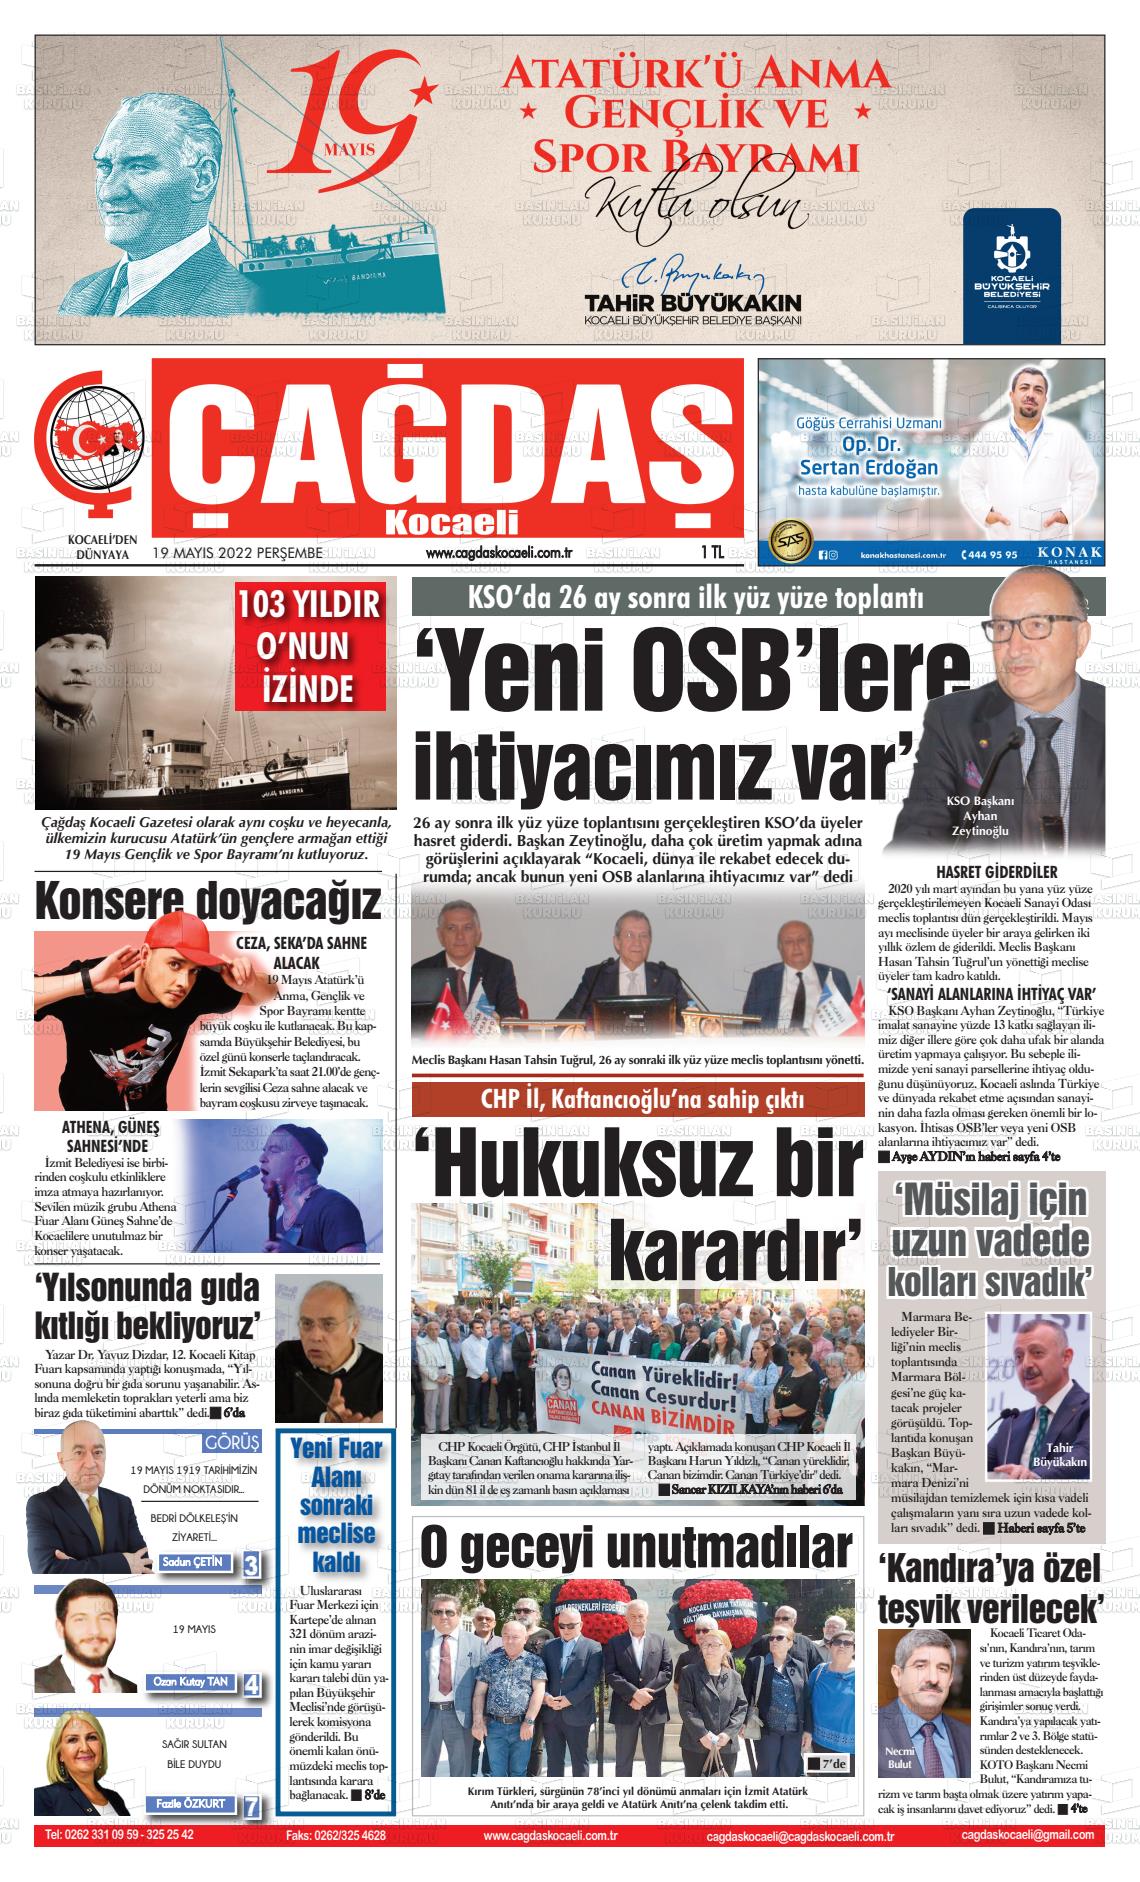 19 Mayıs 2022 Çağdaş Kocaeli Gazete Manşeti